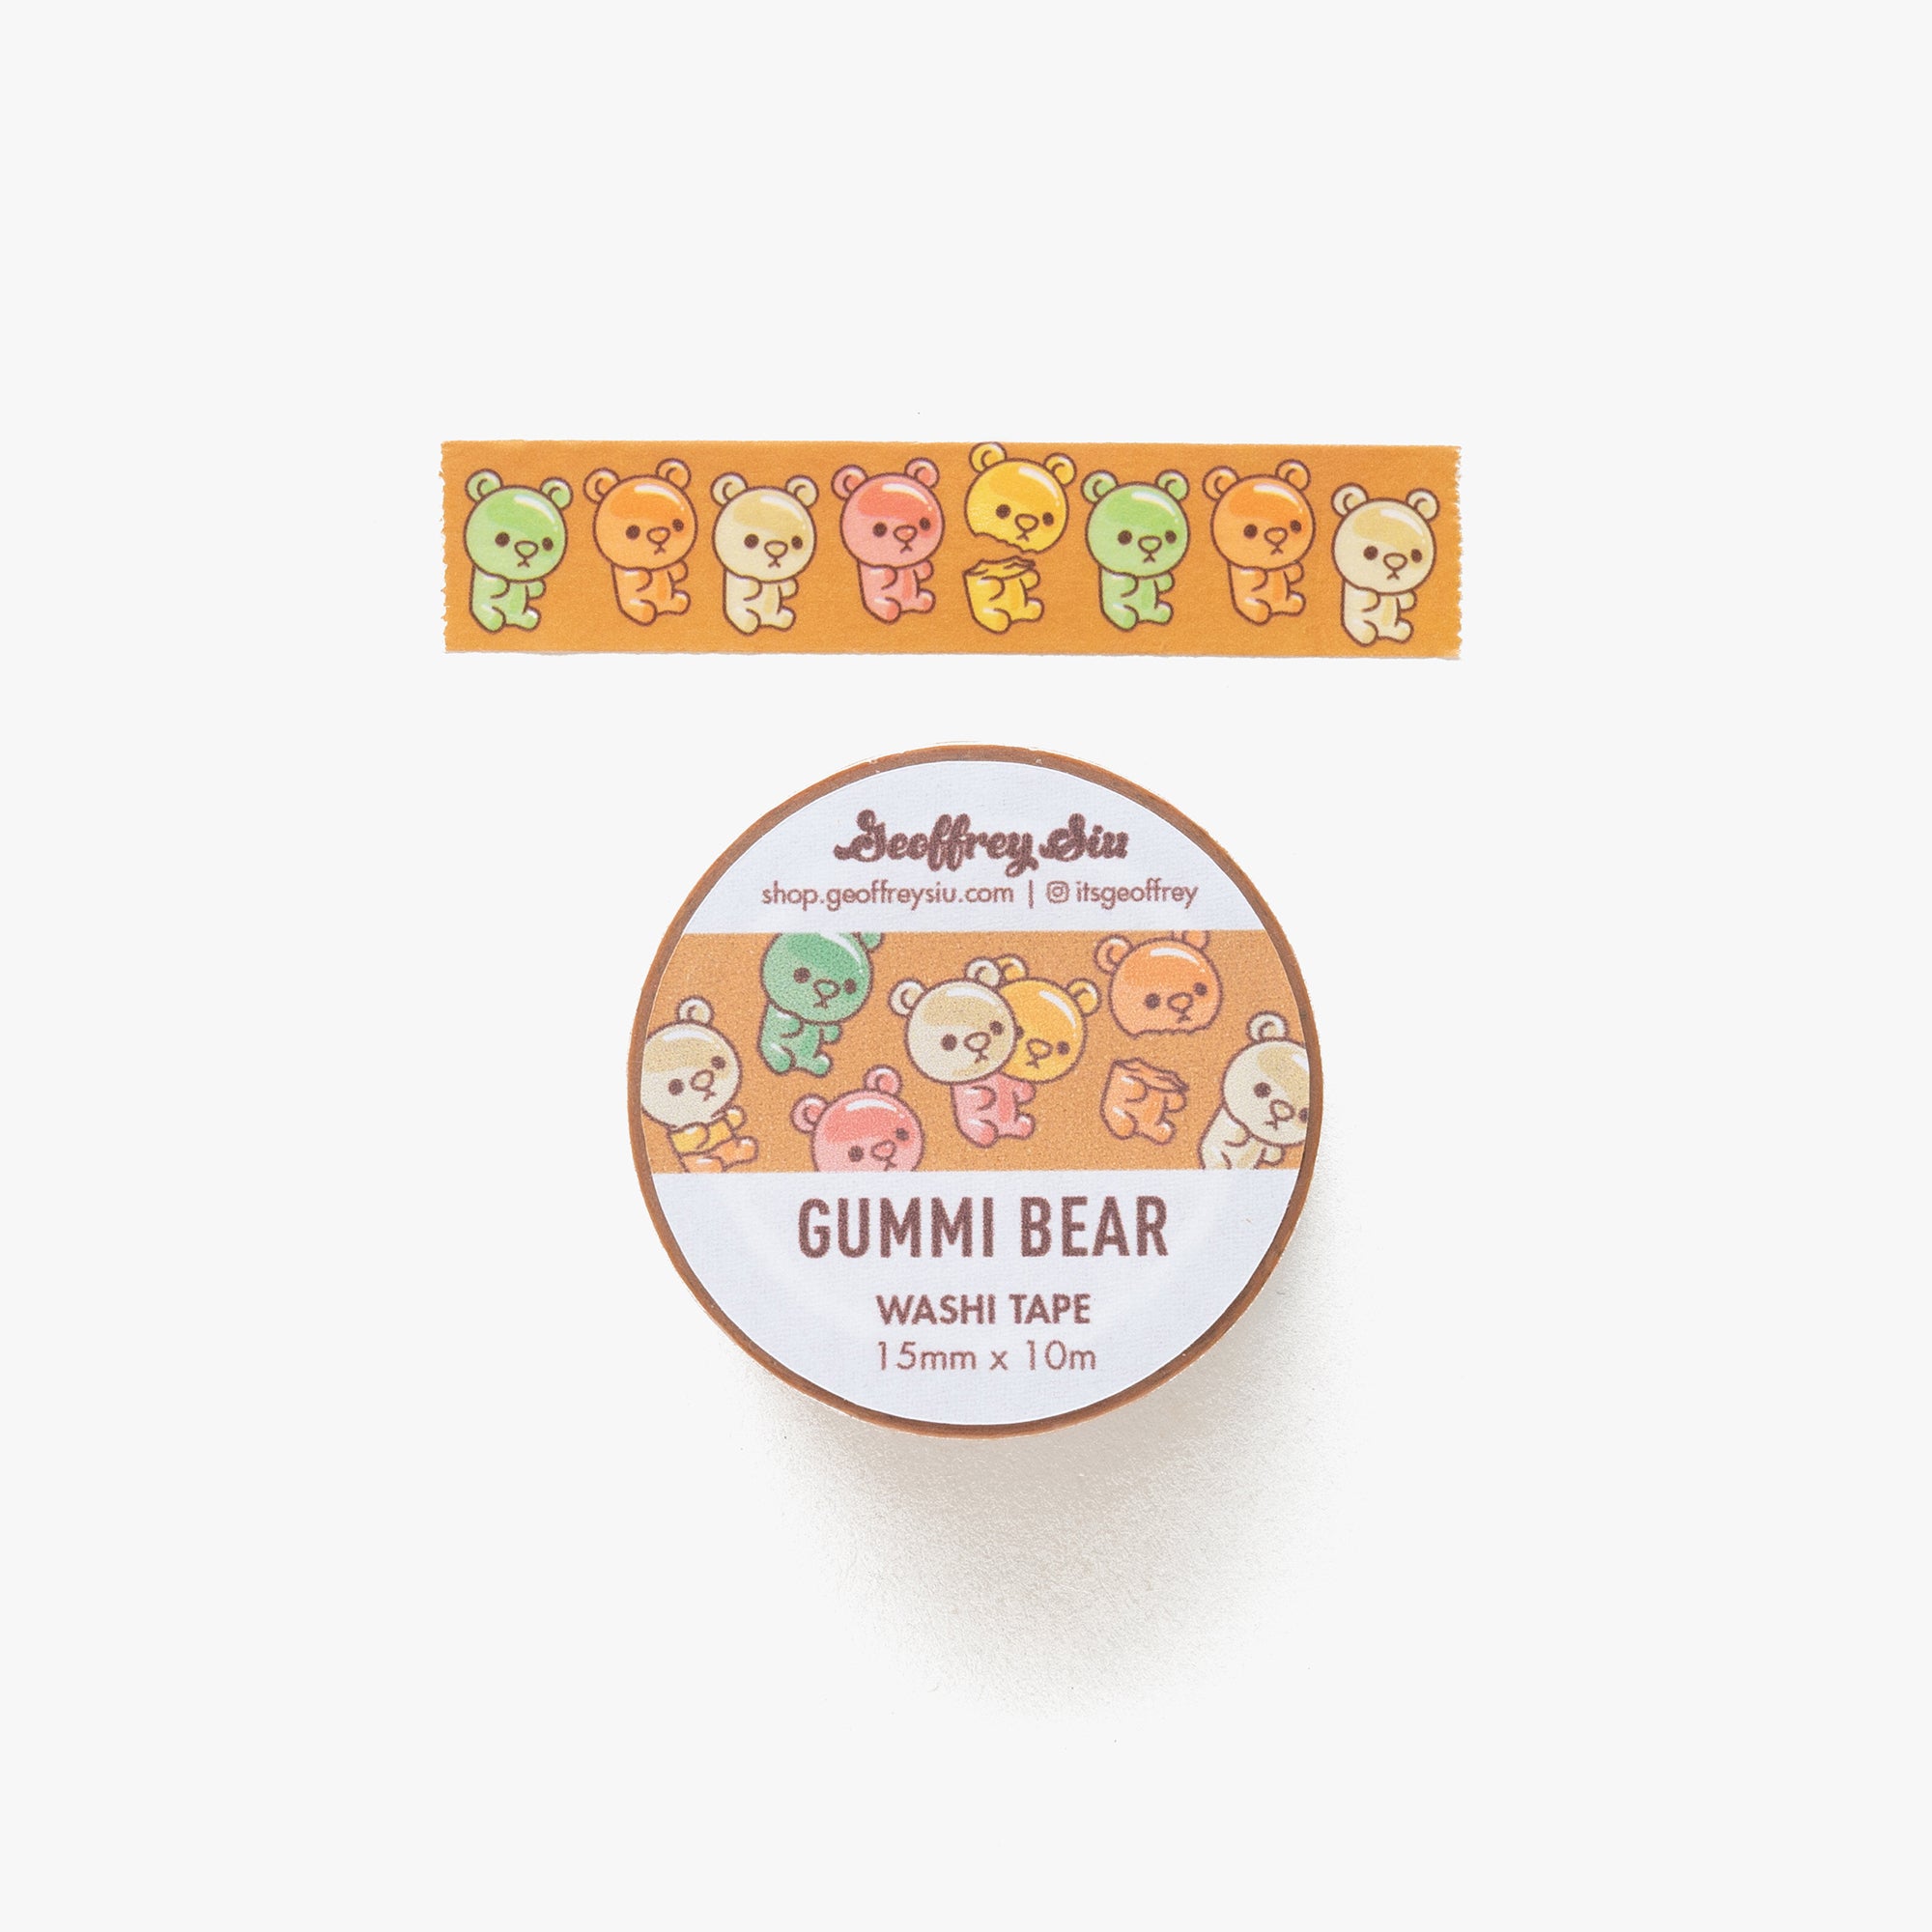 Gummi Bear Washi Tape